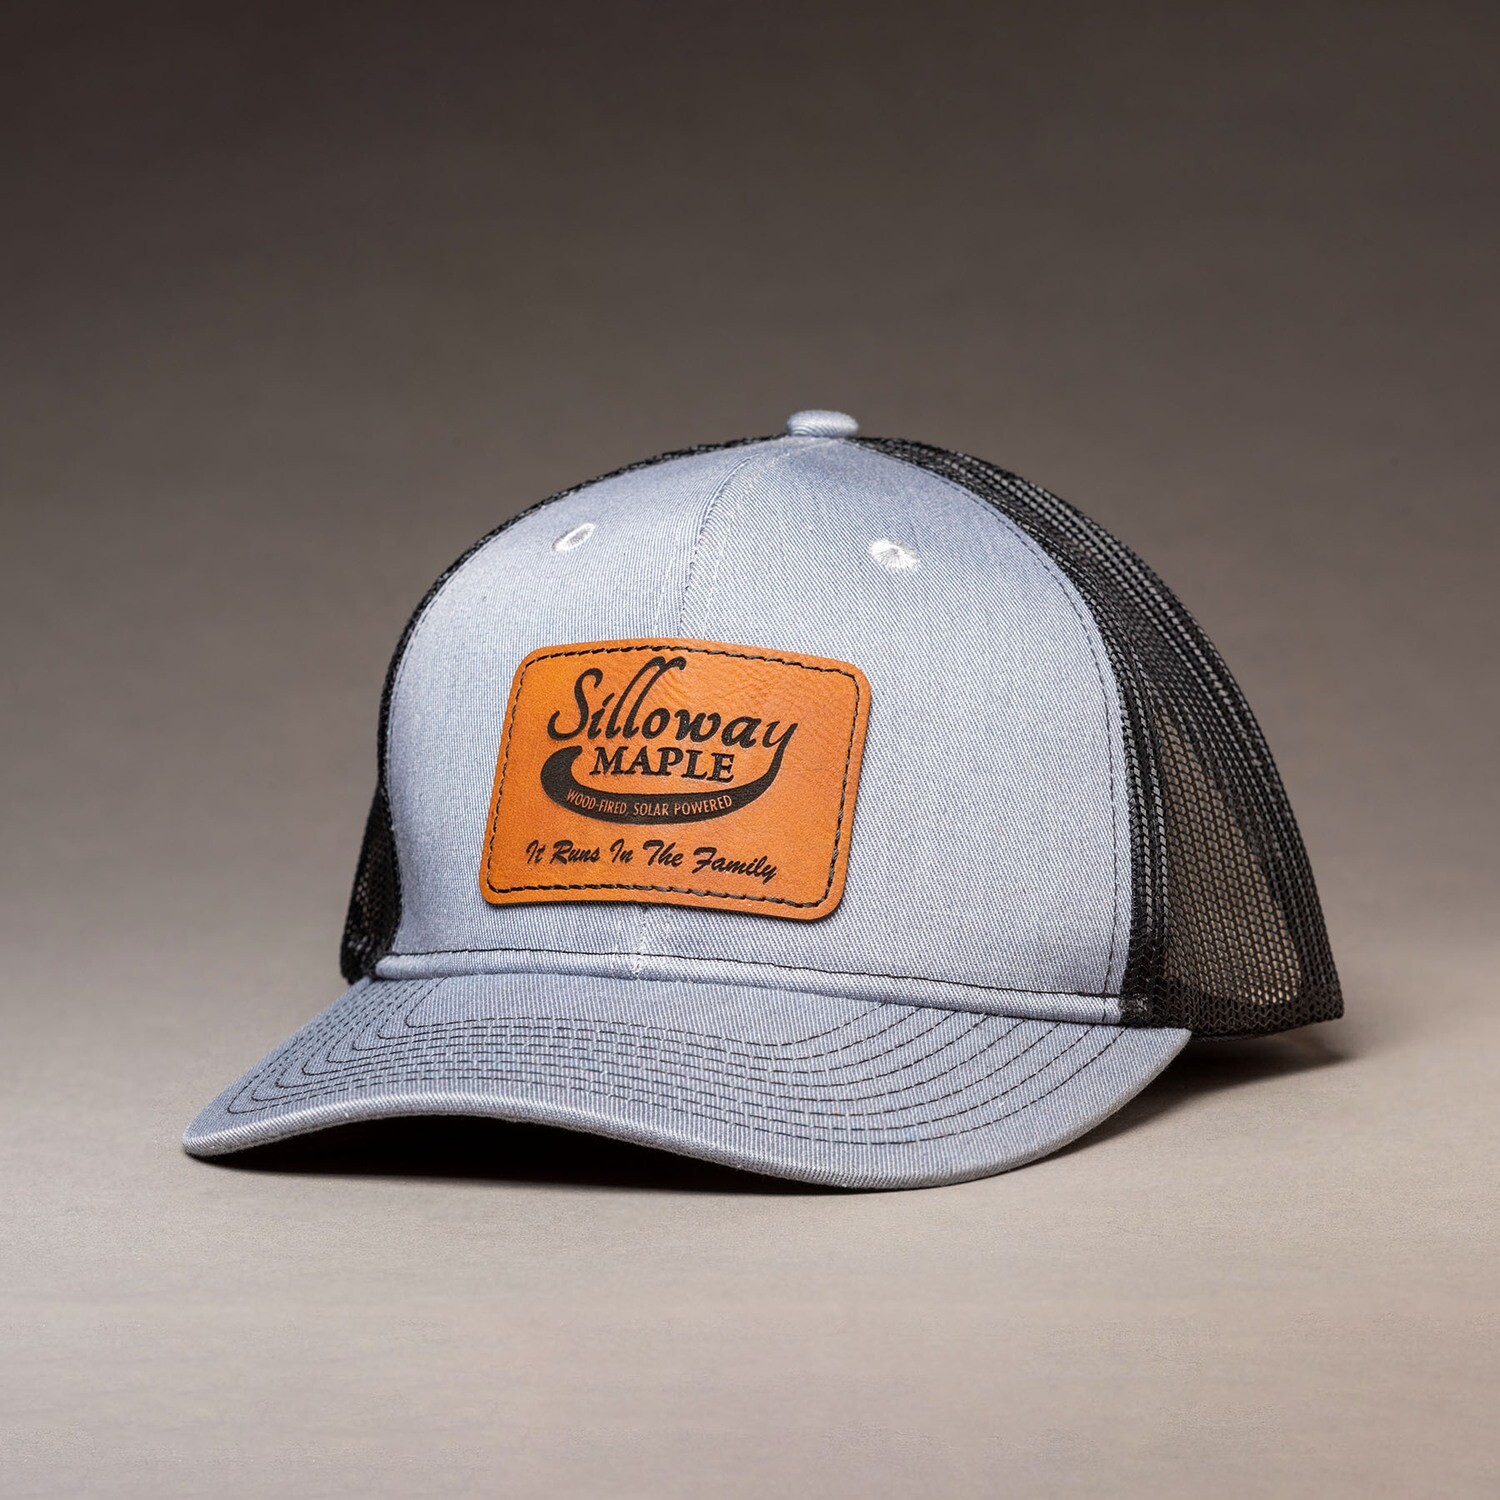 Silloway Maple Trucker's Hat